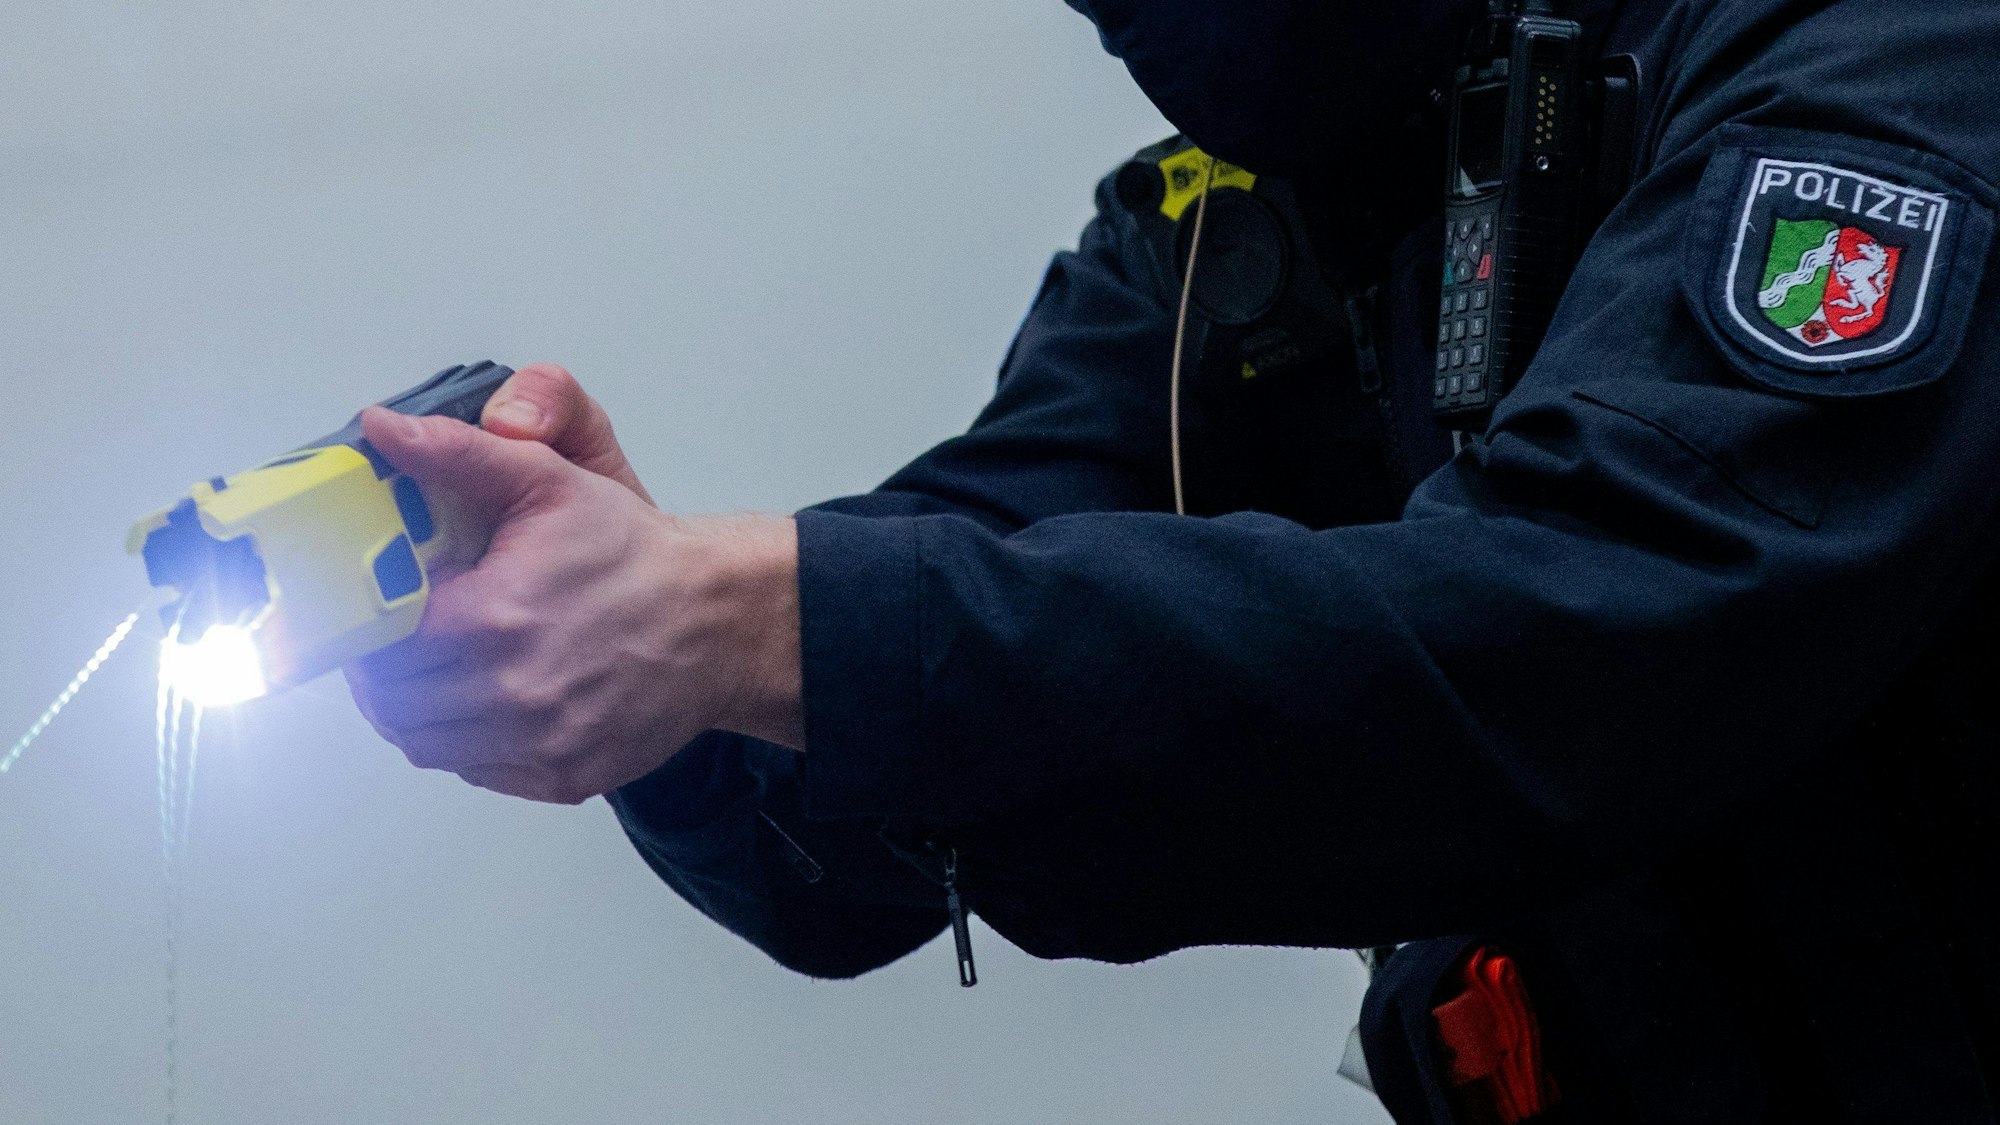 Das Bild zeigt einen Polizeibeamten, der einen Taser in der Hand hält.